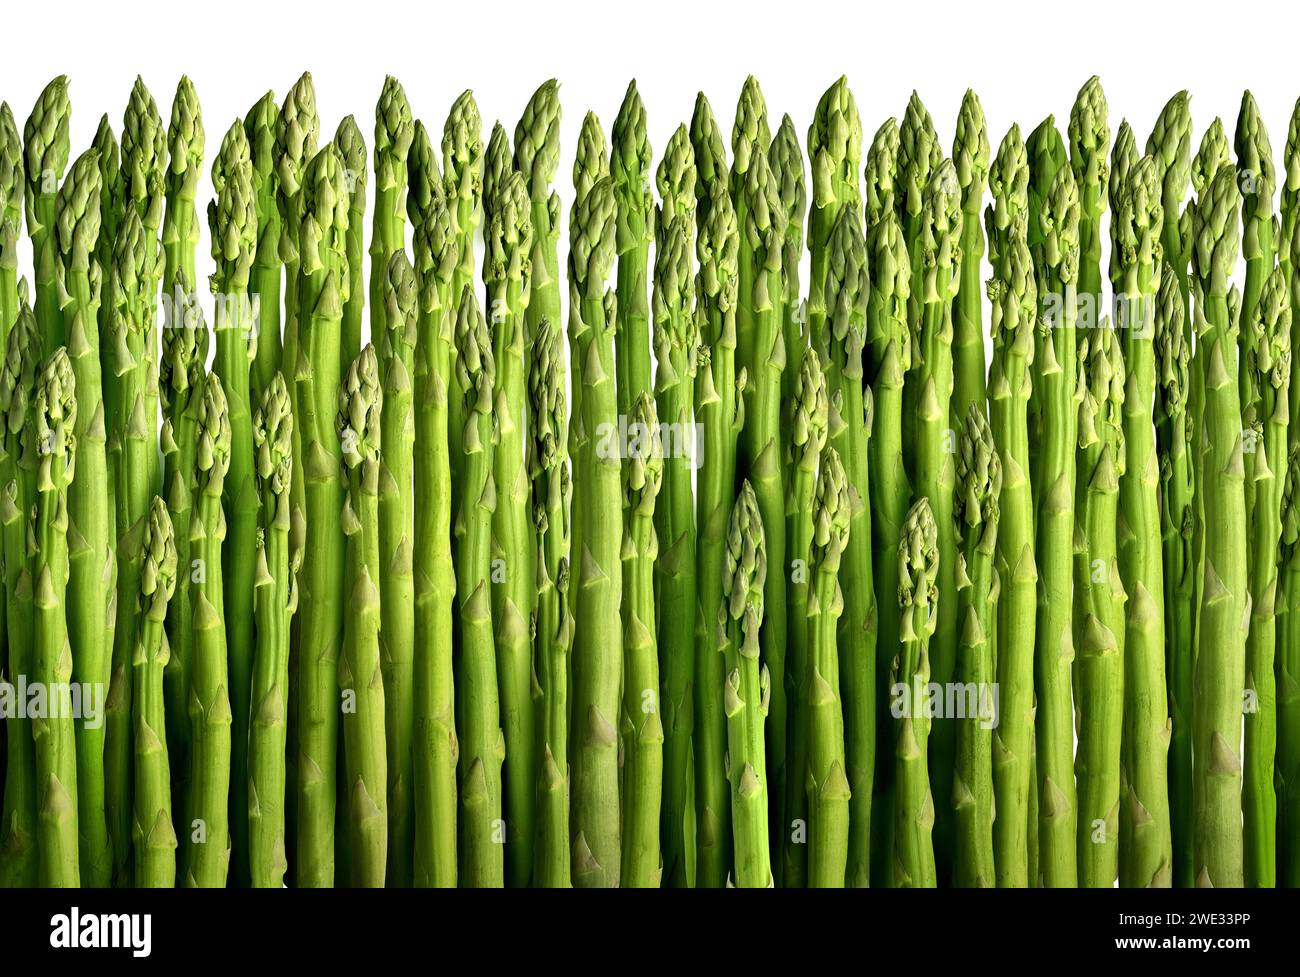 Sfondo di asparagi come verdure verdi coltivate o selvatiche che rappresentano una raccolta sana e fresca di verdure perenni raccolto per la cottura dei contorni e. Foto Stock